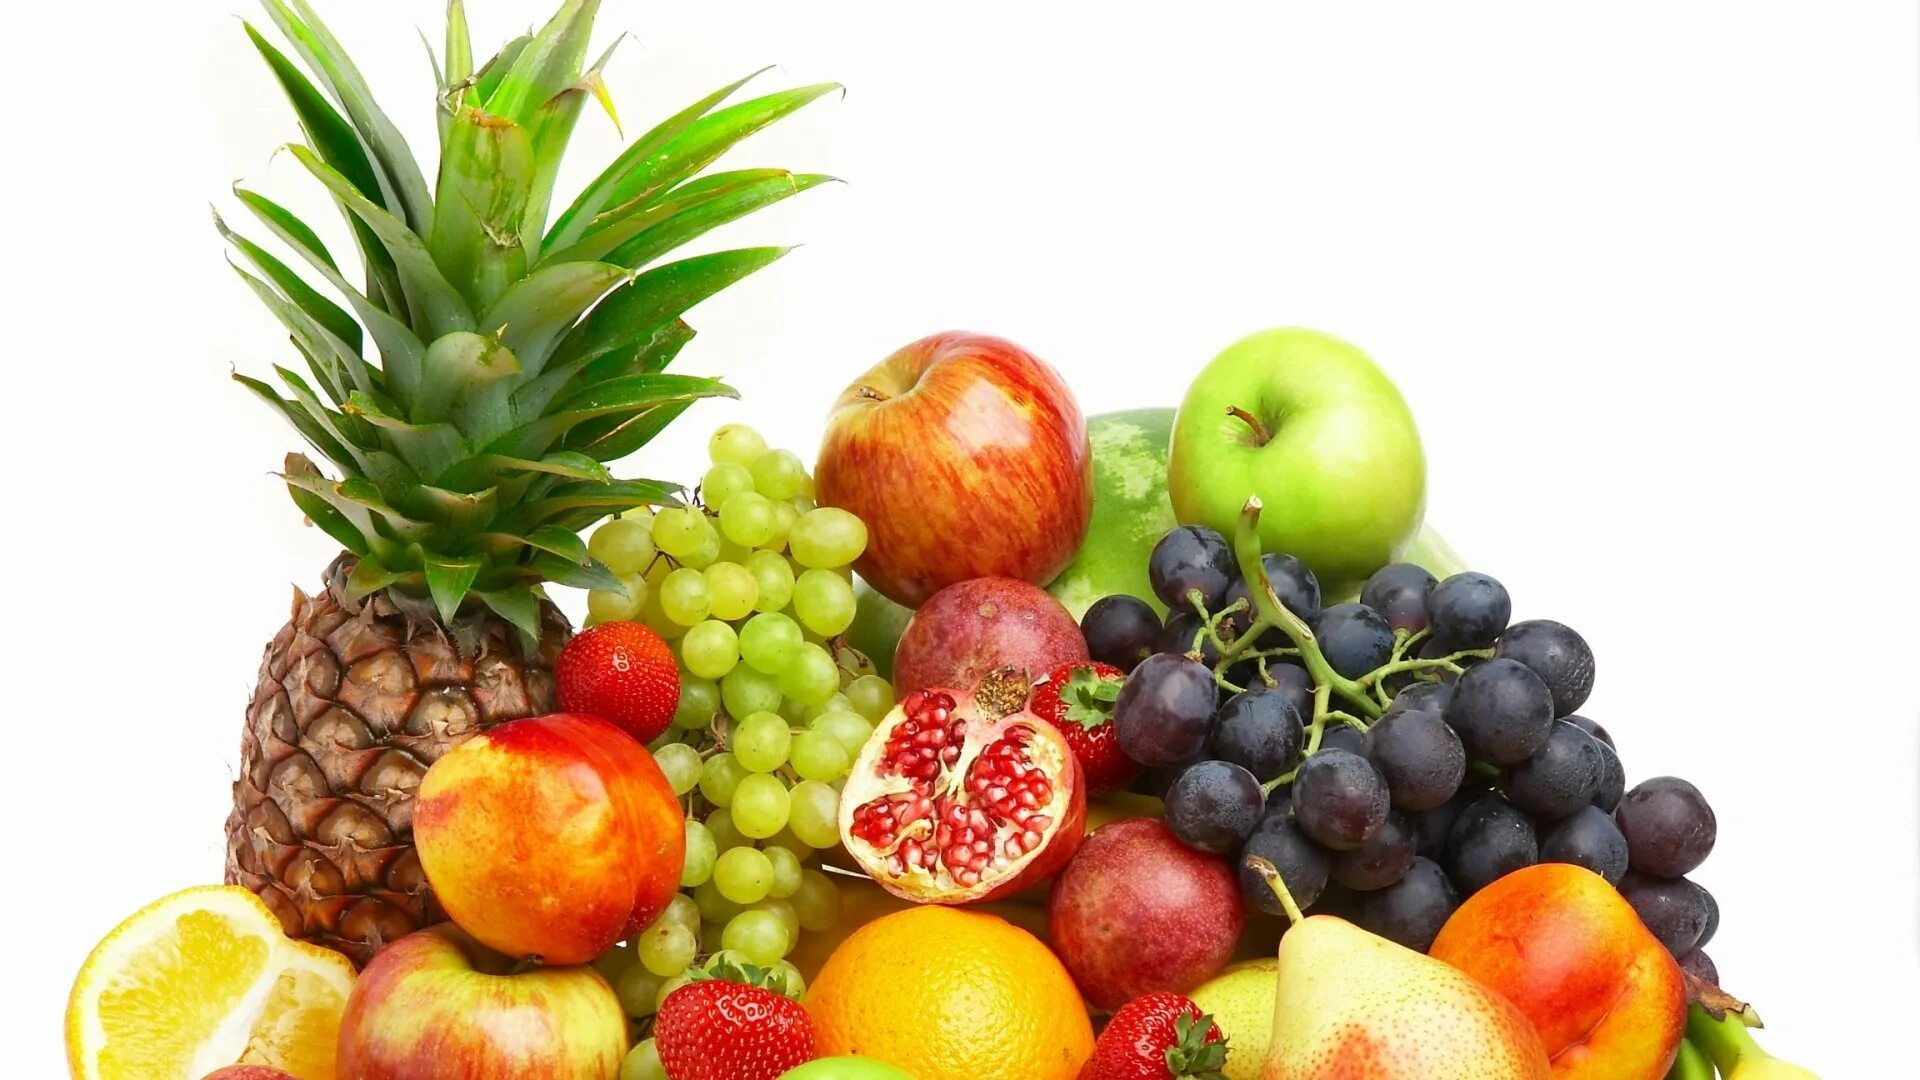 60 килограмм фруктов. Овощи, фрукты, ягоды. Фрукты. Овощи и фрукты на прозрачном фоне. Фрукты на прозрачном фоне.